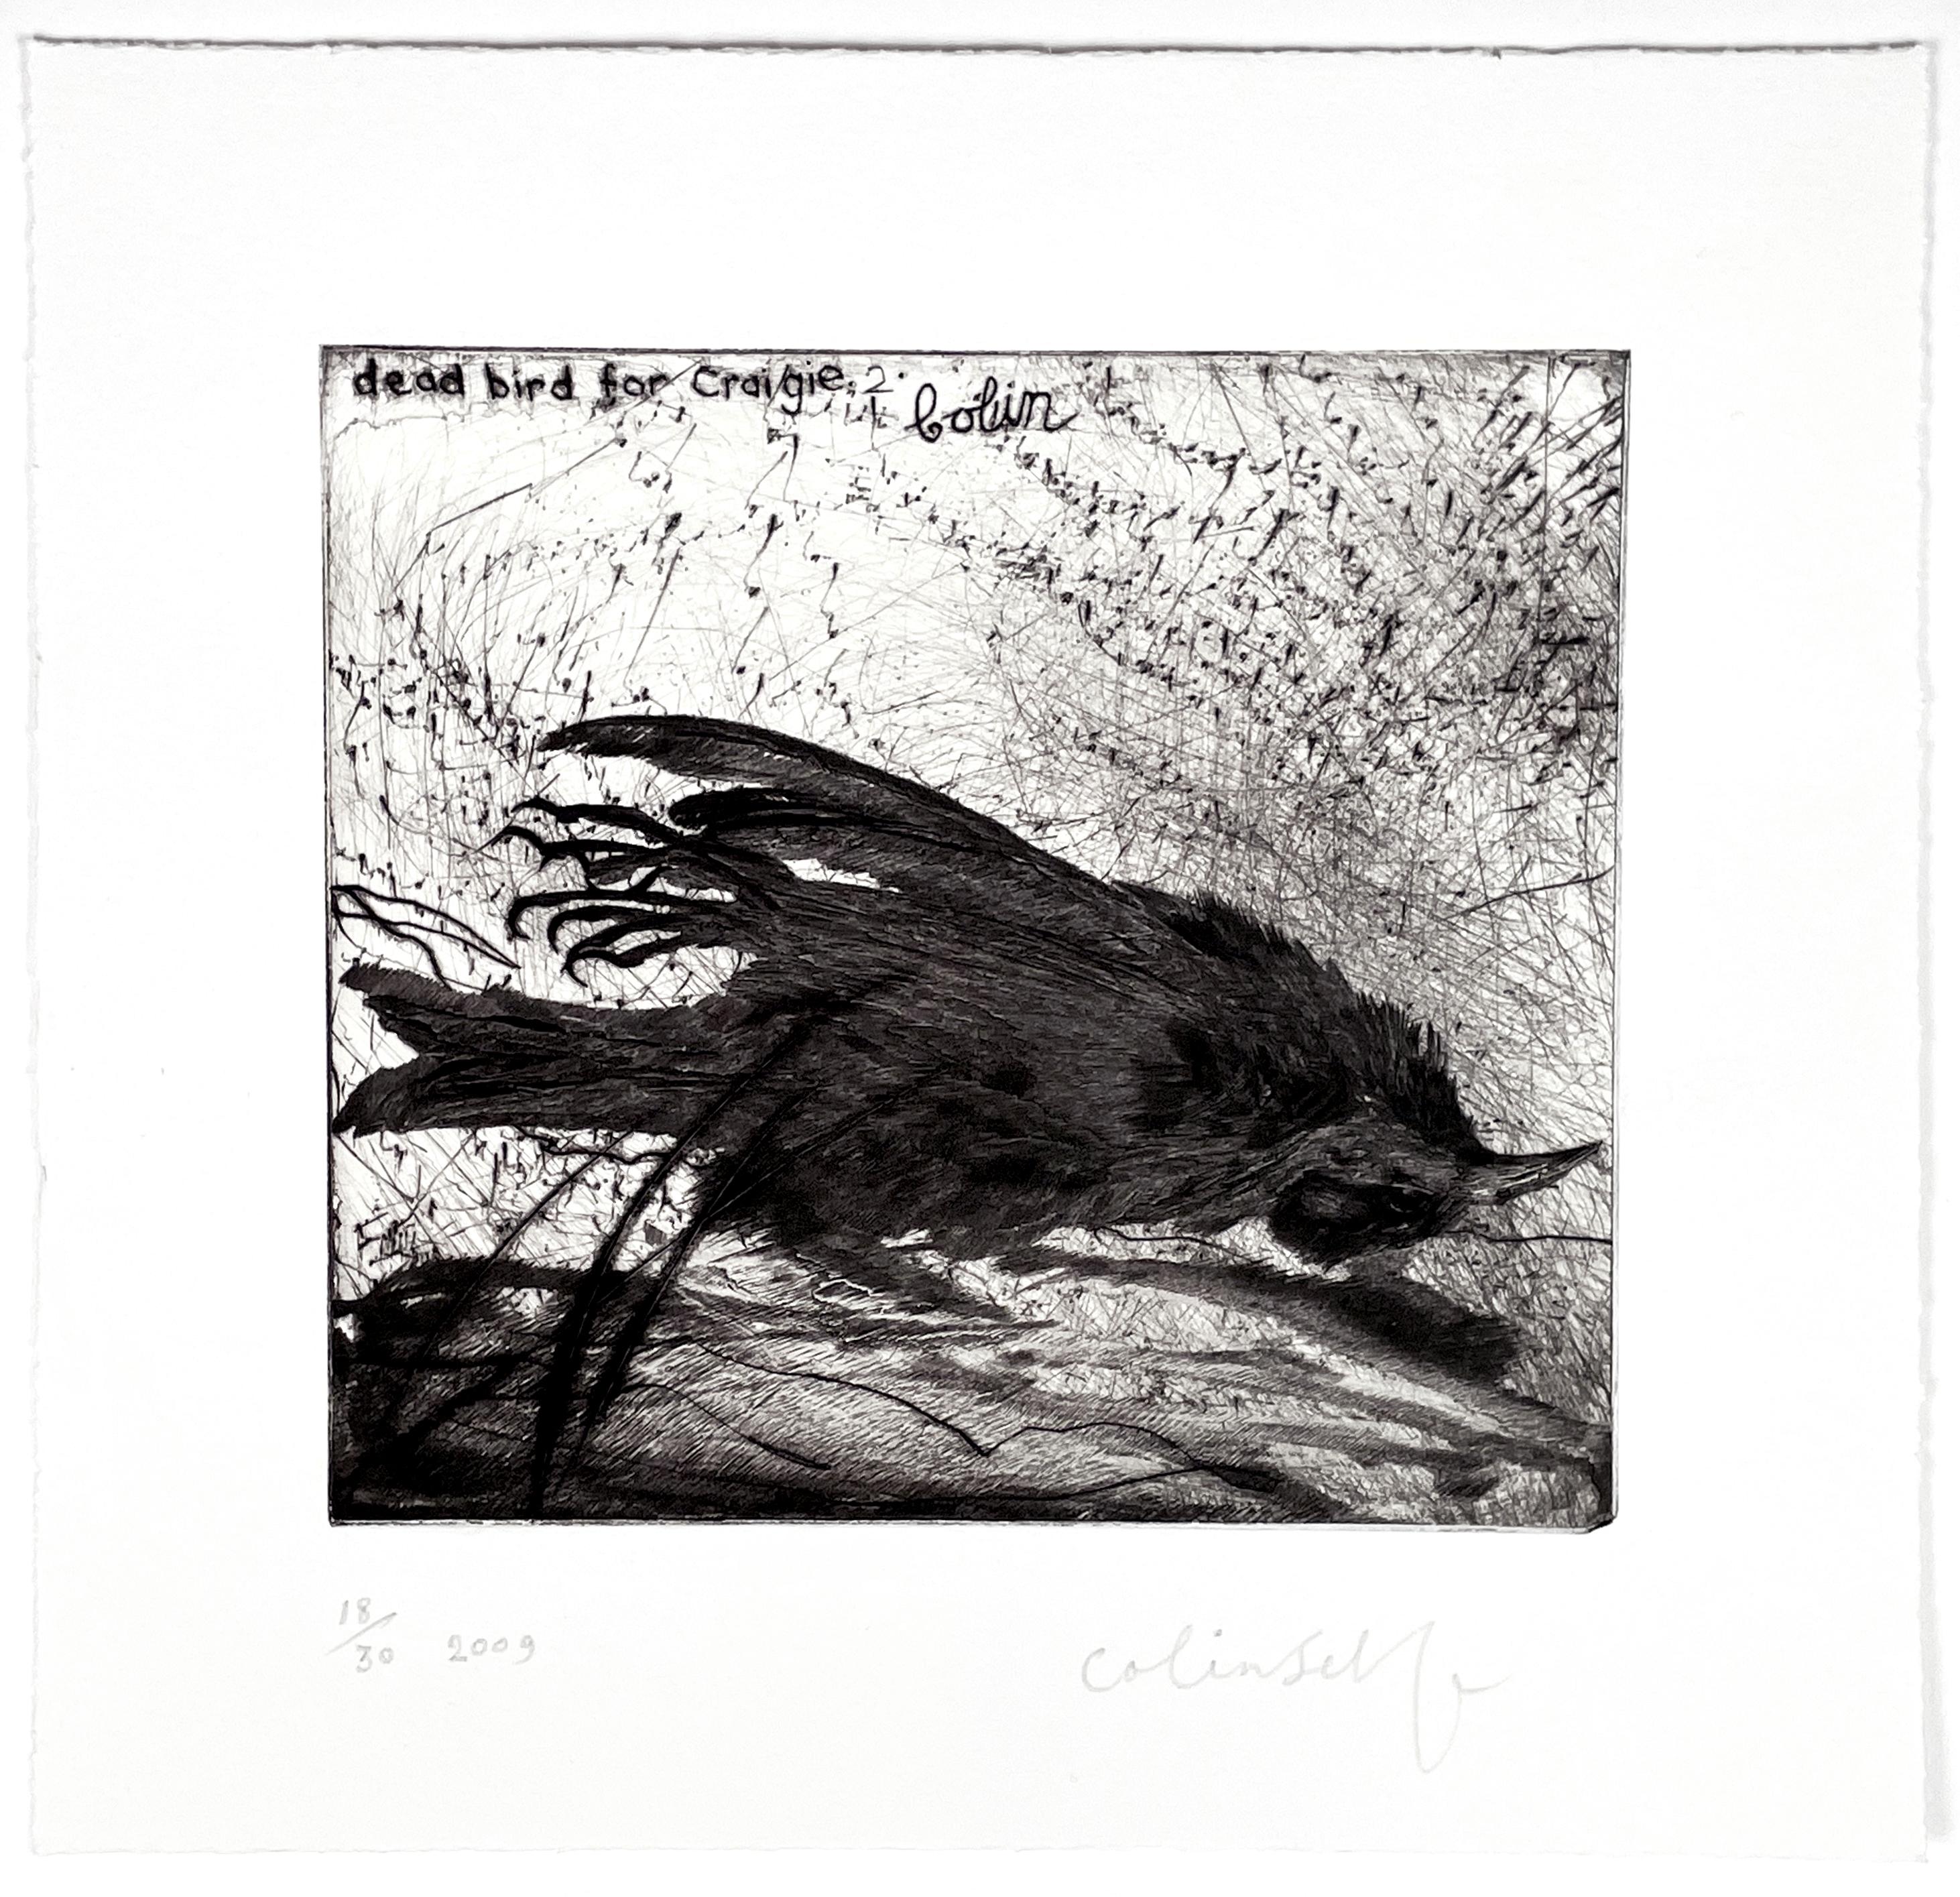  Dead Bird für Craigie No. 2 (Expressionismus), Print, von Colin Self